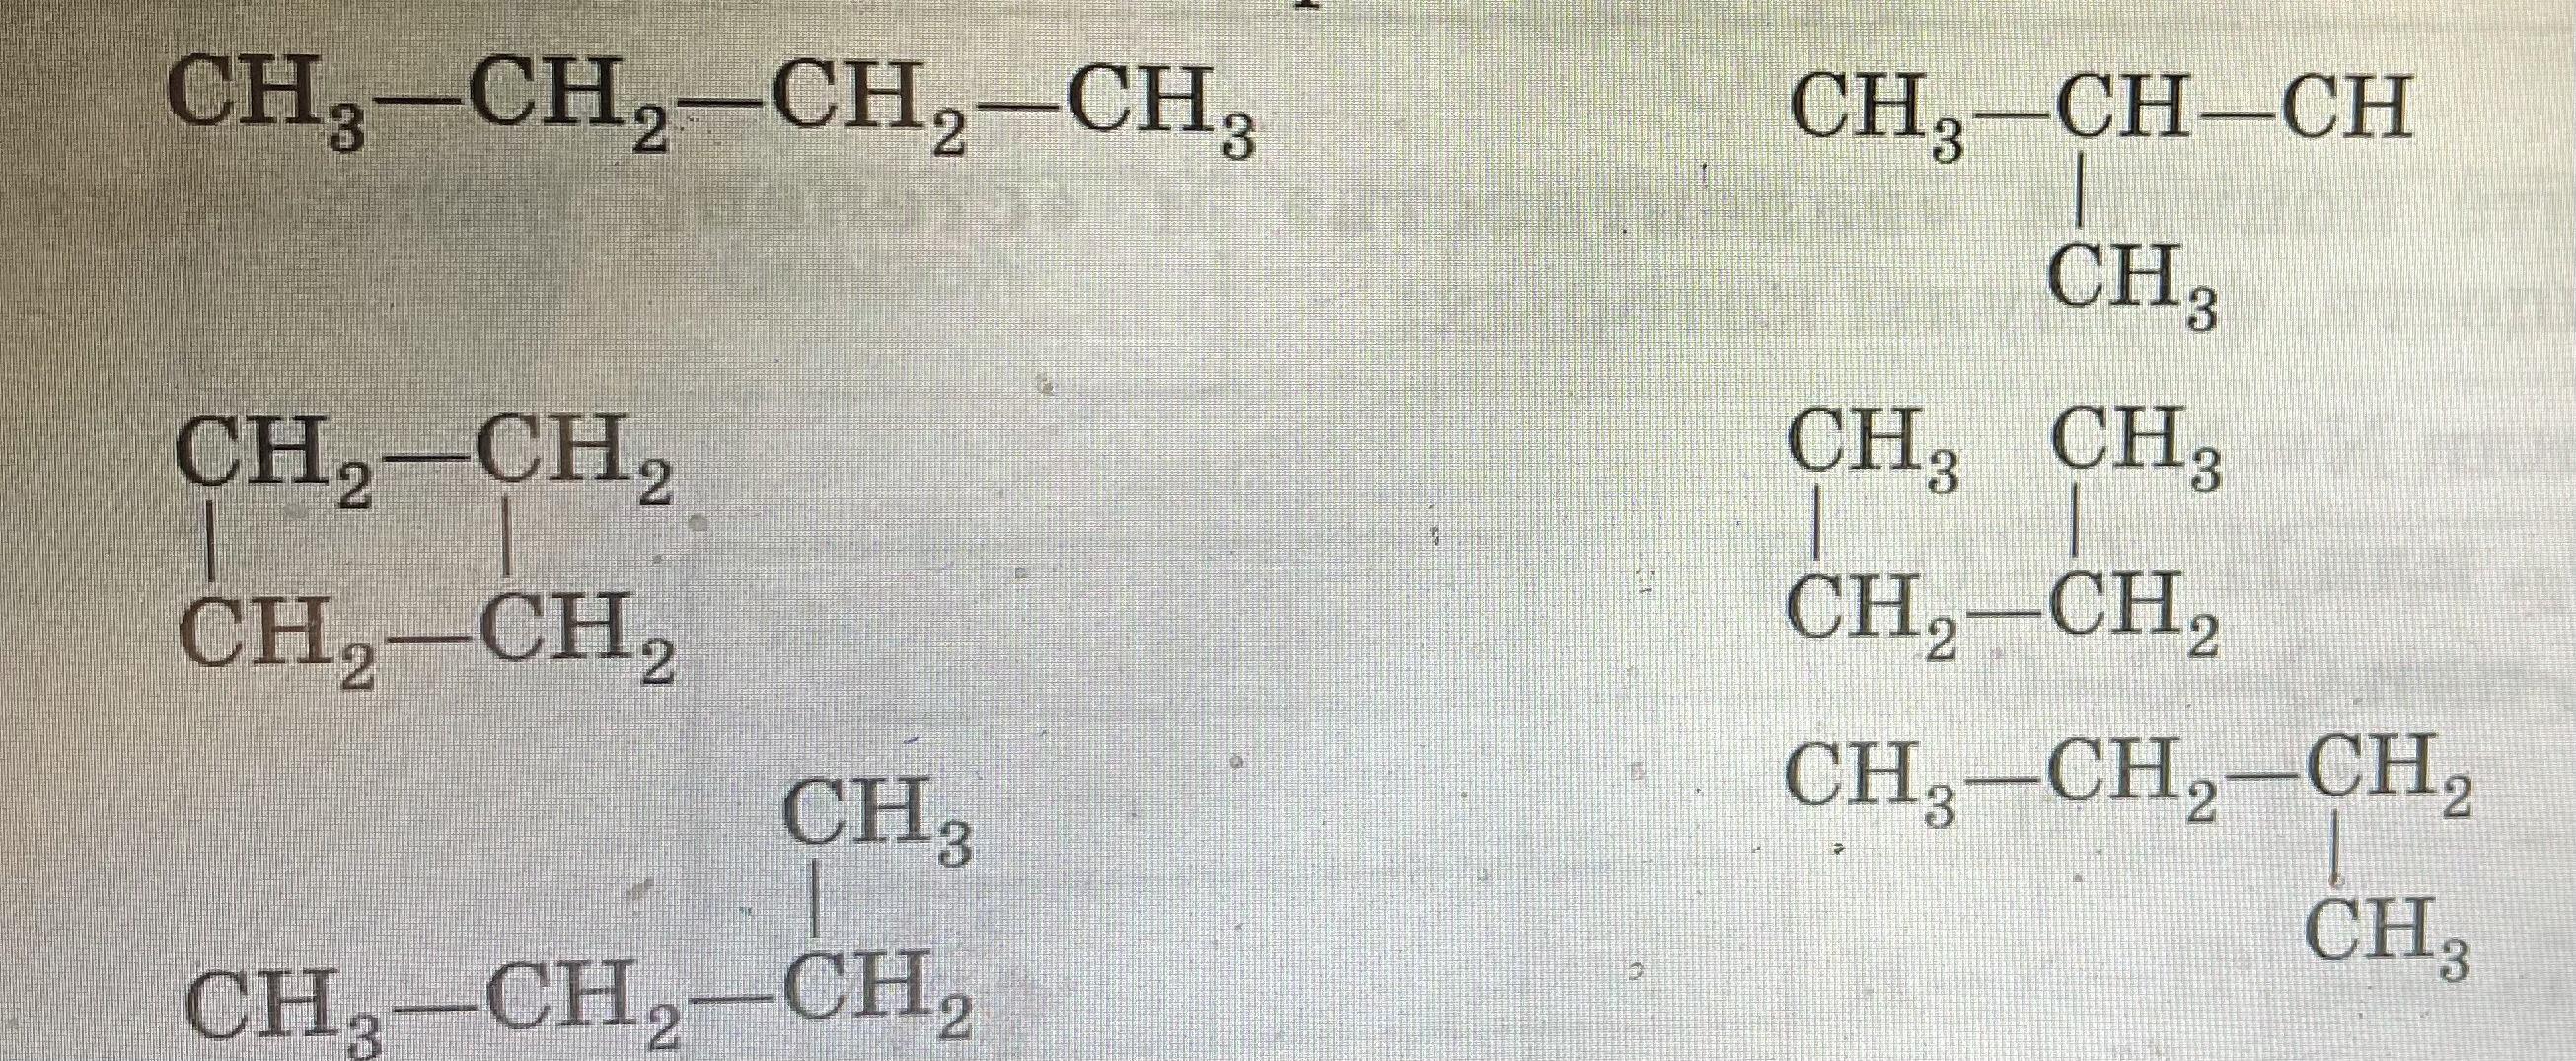 Структурные формулы изомеров пентана. Изомеры органика. Как давать названия изомерам. Дайте название веществам и укажите какие из них являются изомерами. Химия б 6